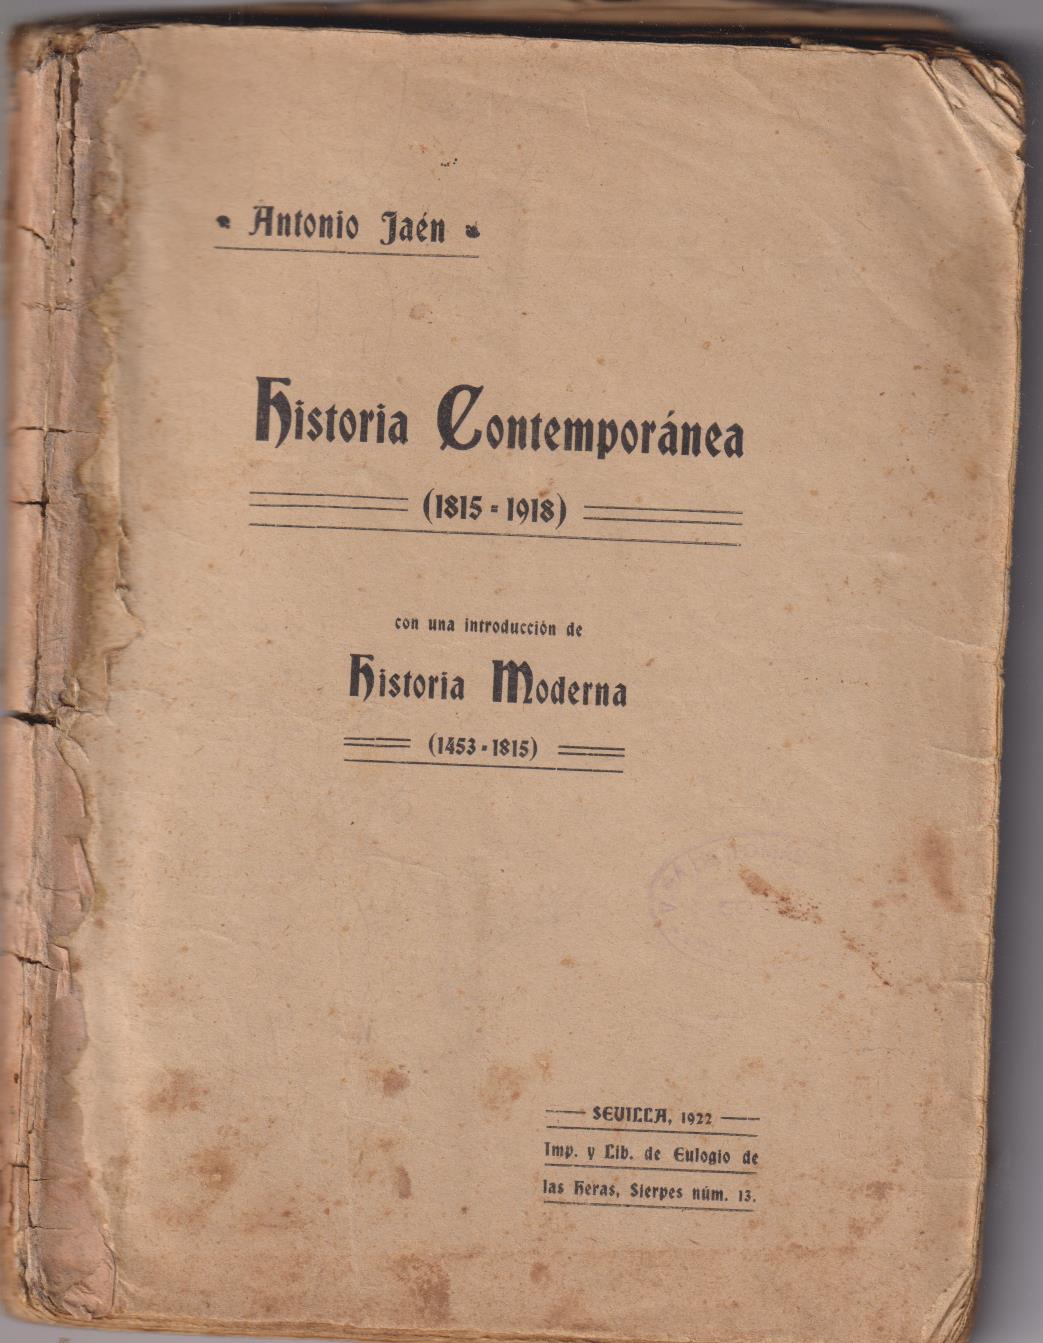 Antonio Jaén. Historia Contemporánea (1815-1918) Con una introducción de Historia Moderna (1453-1815)